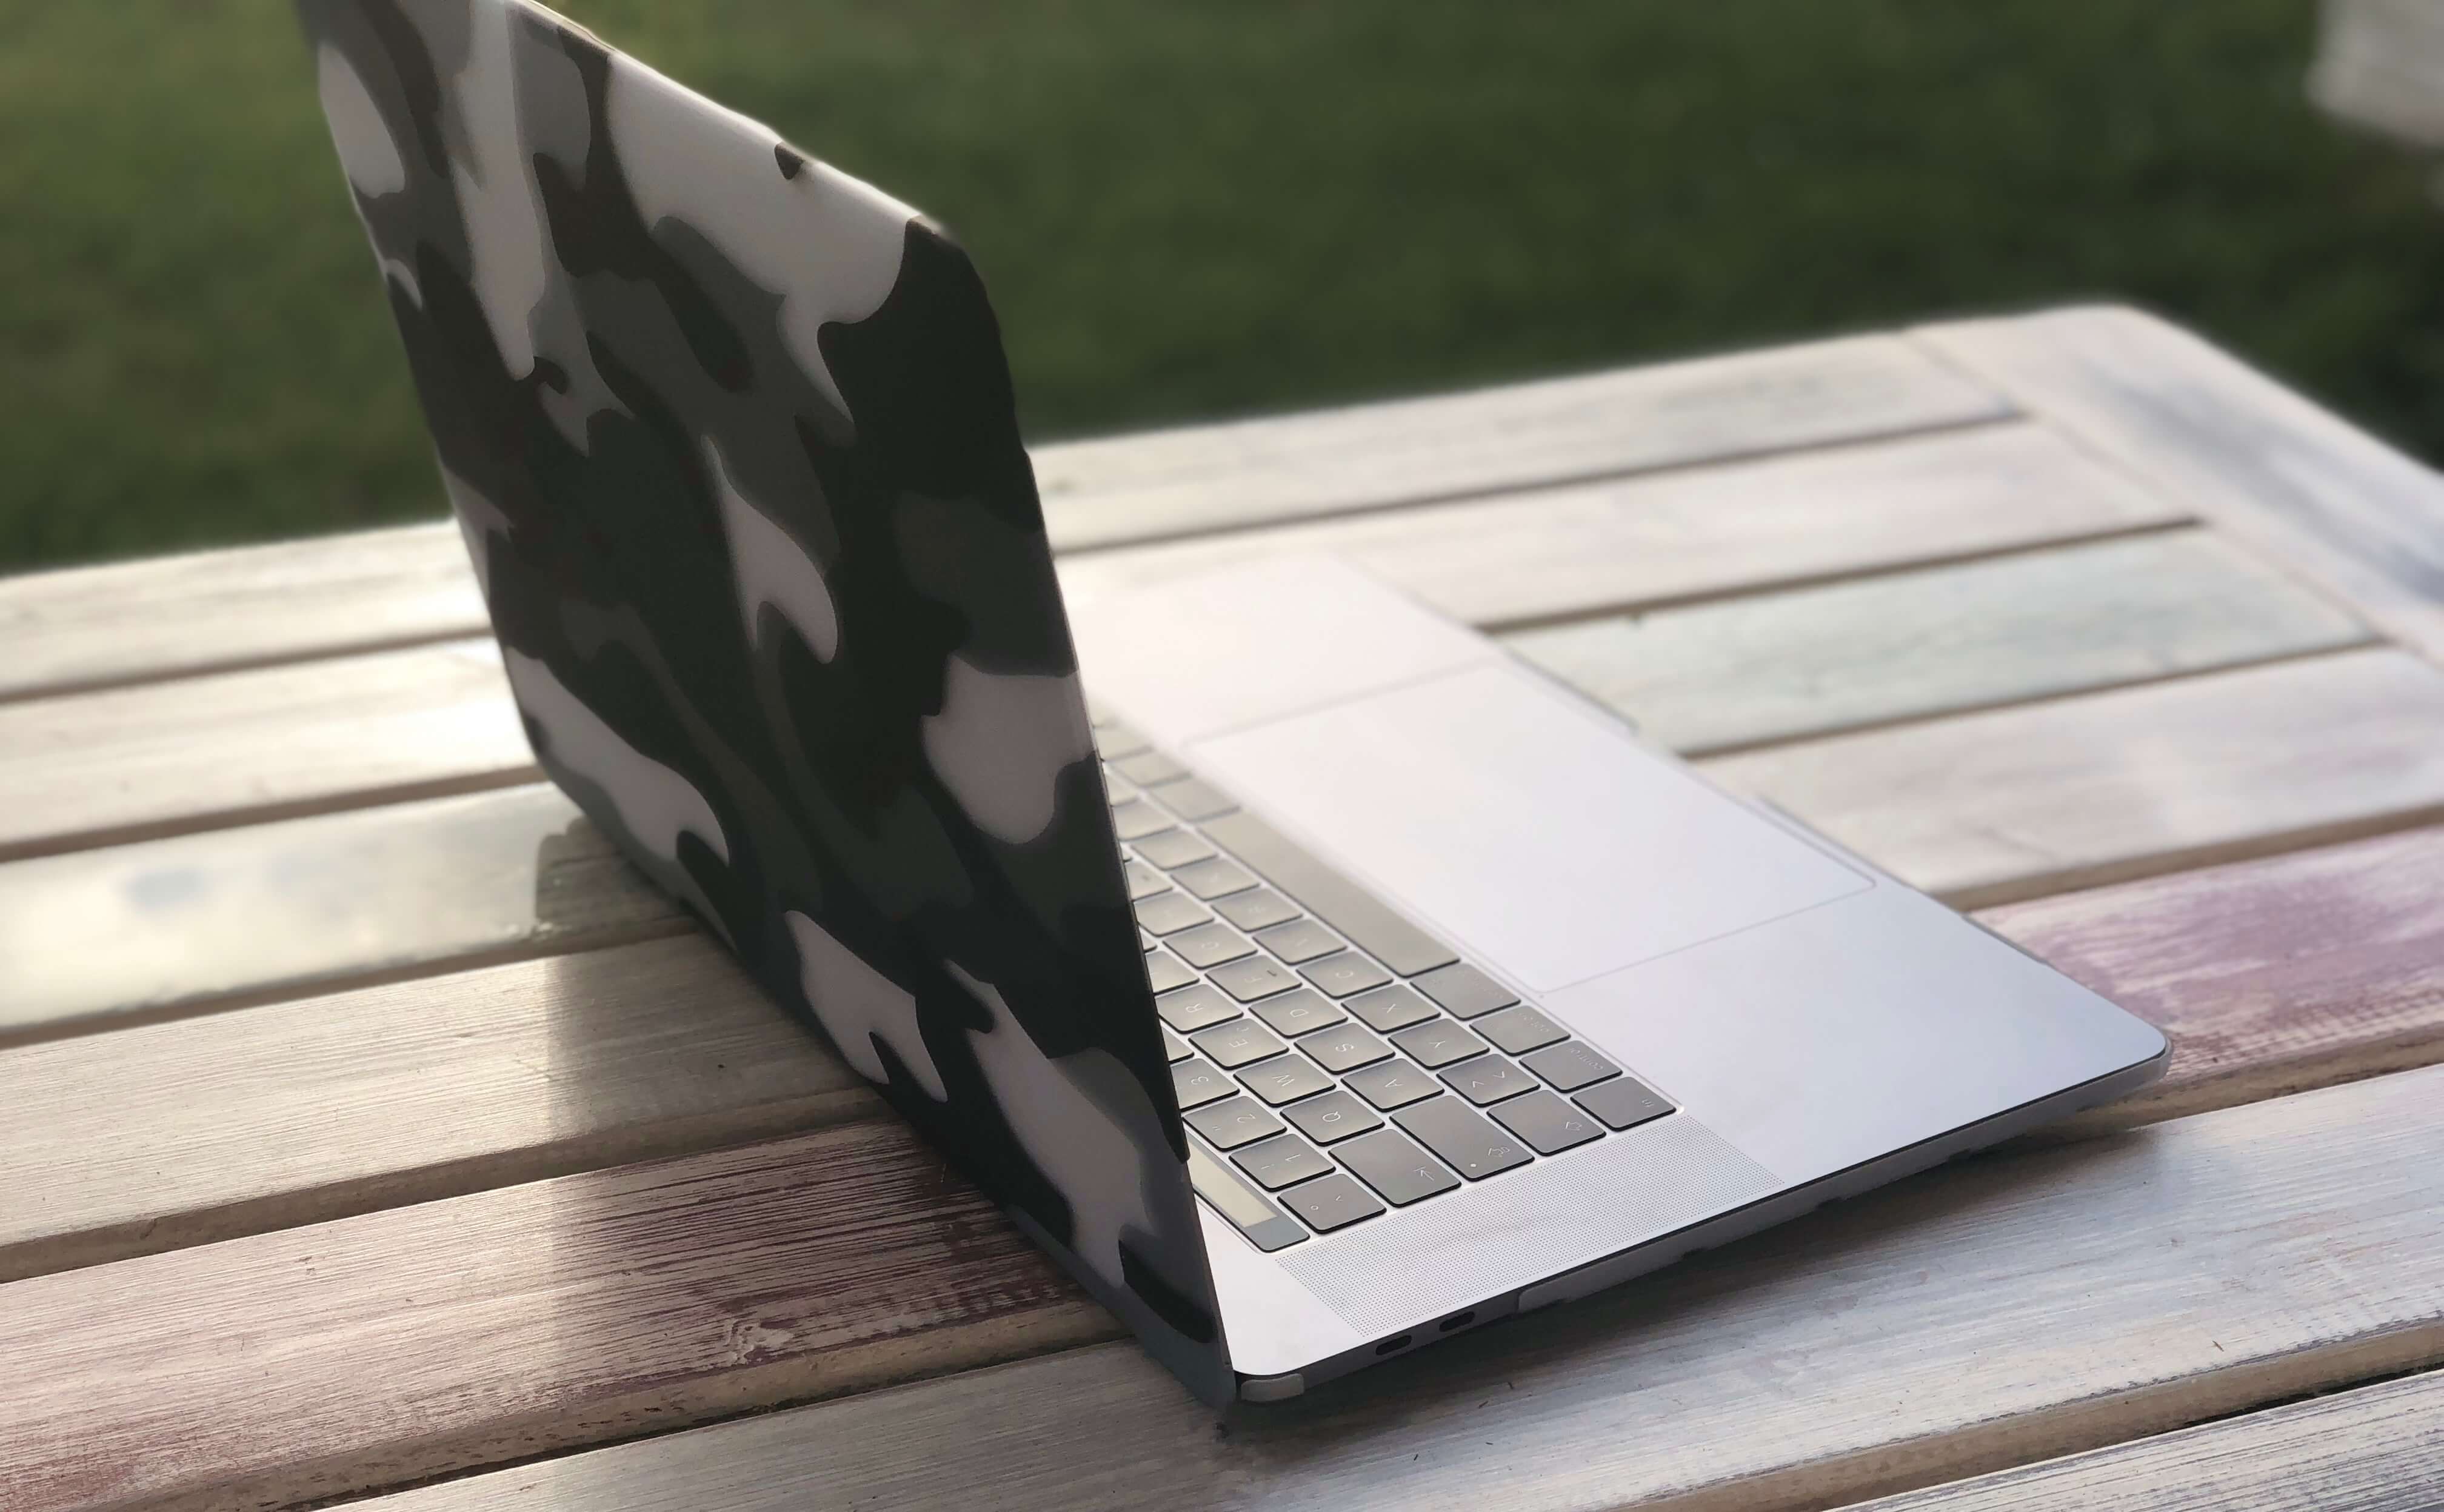 Tschüss MacBook Pro 15 Zoll! 1